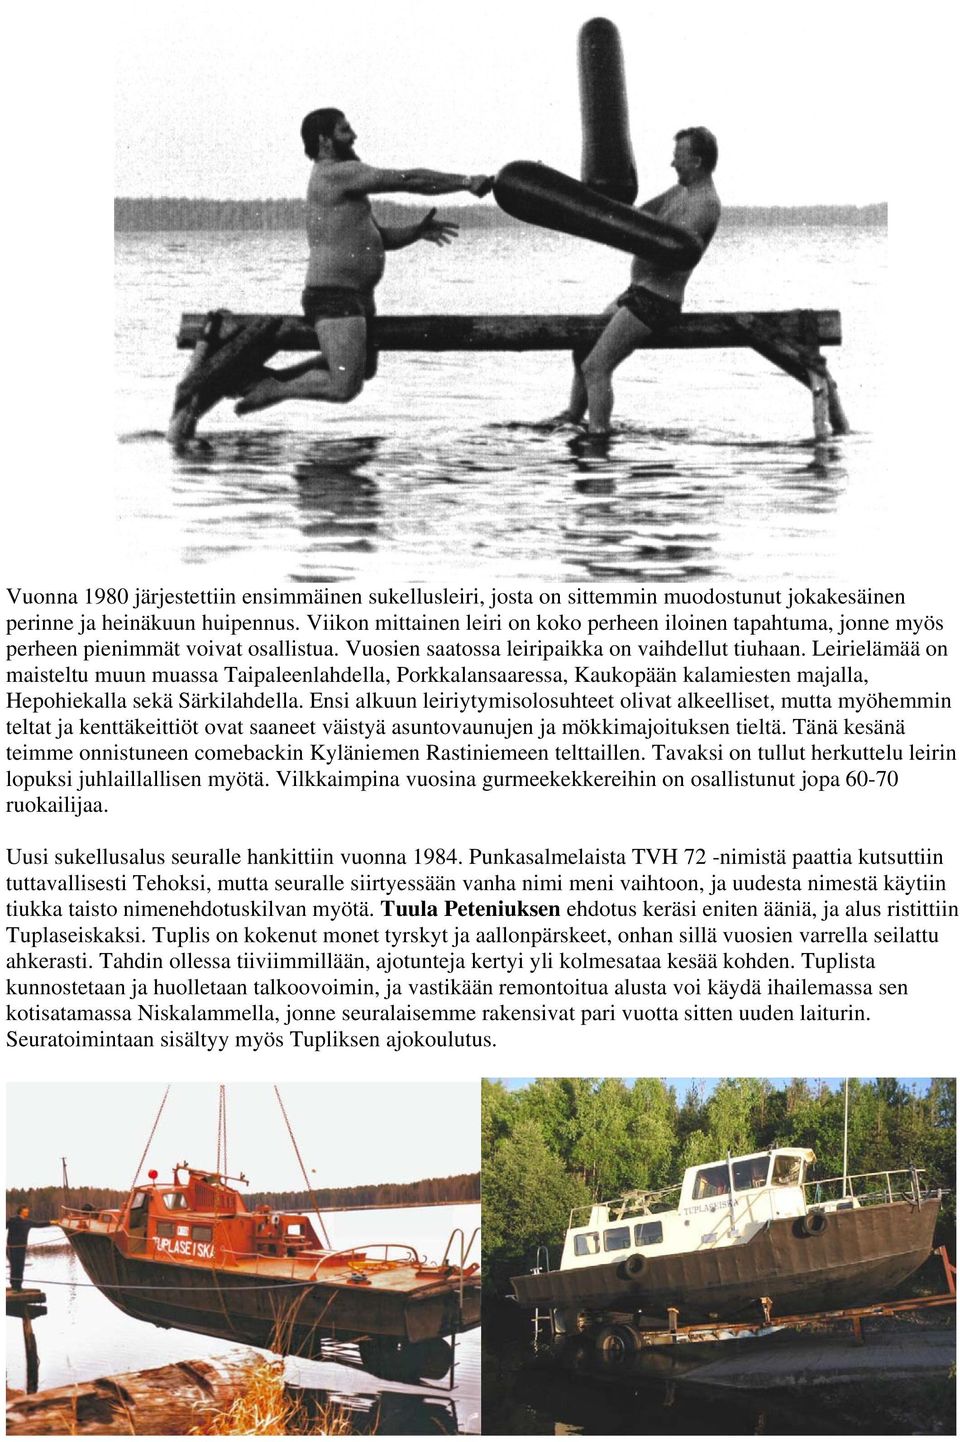 Leirielämää on maisteltu muun muassa Taipaleenlahdella, Porkkalansaaressa, Kaukopään kalamiesten majalla, Hepohiekalla sekä Särkilahdella.